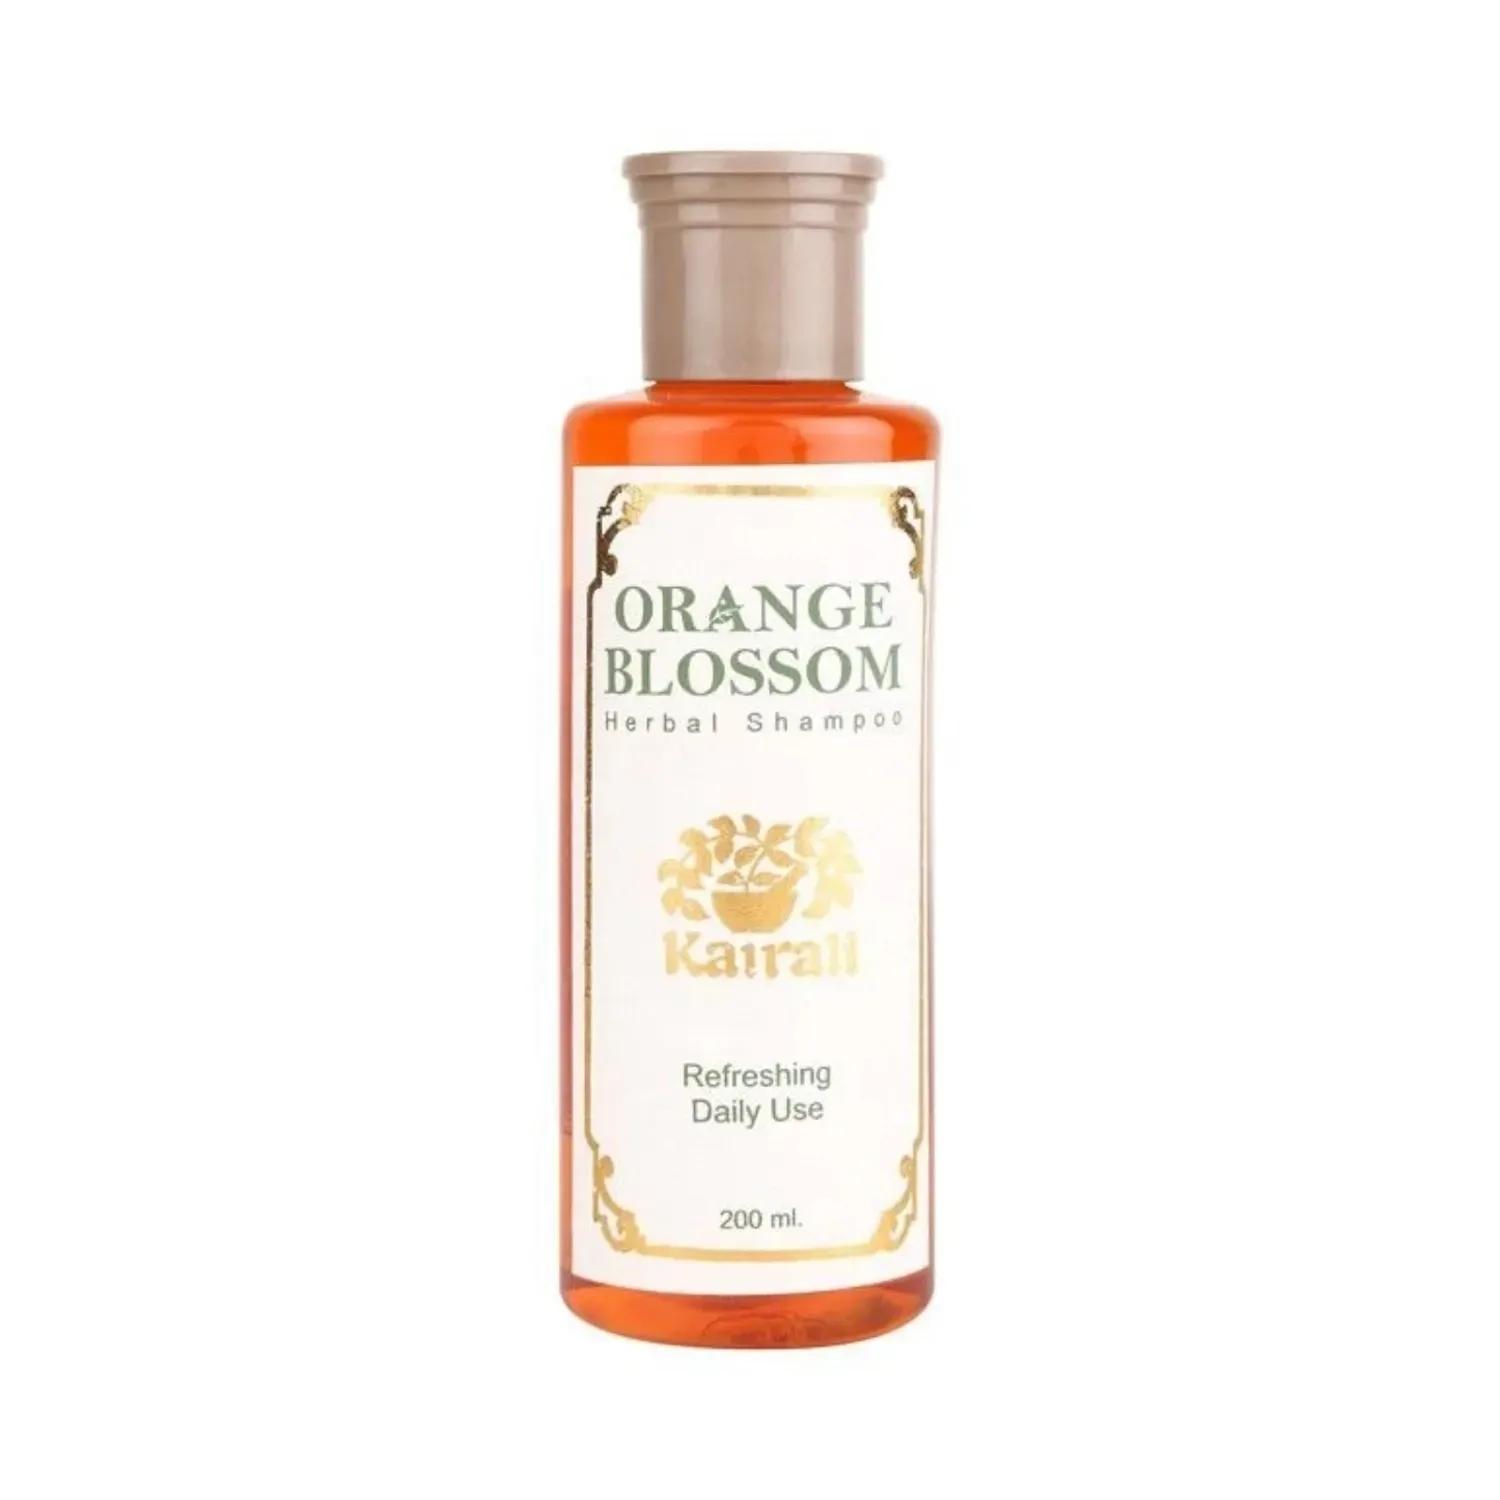 Kairali Orange Blossom Shampoo (200ml)